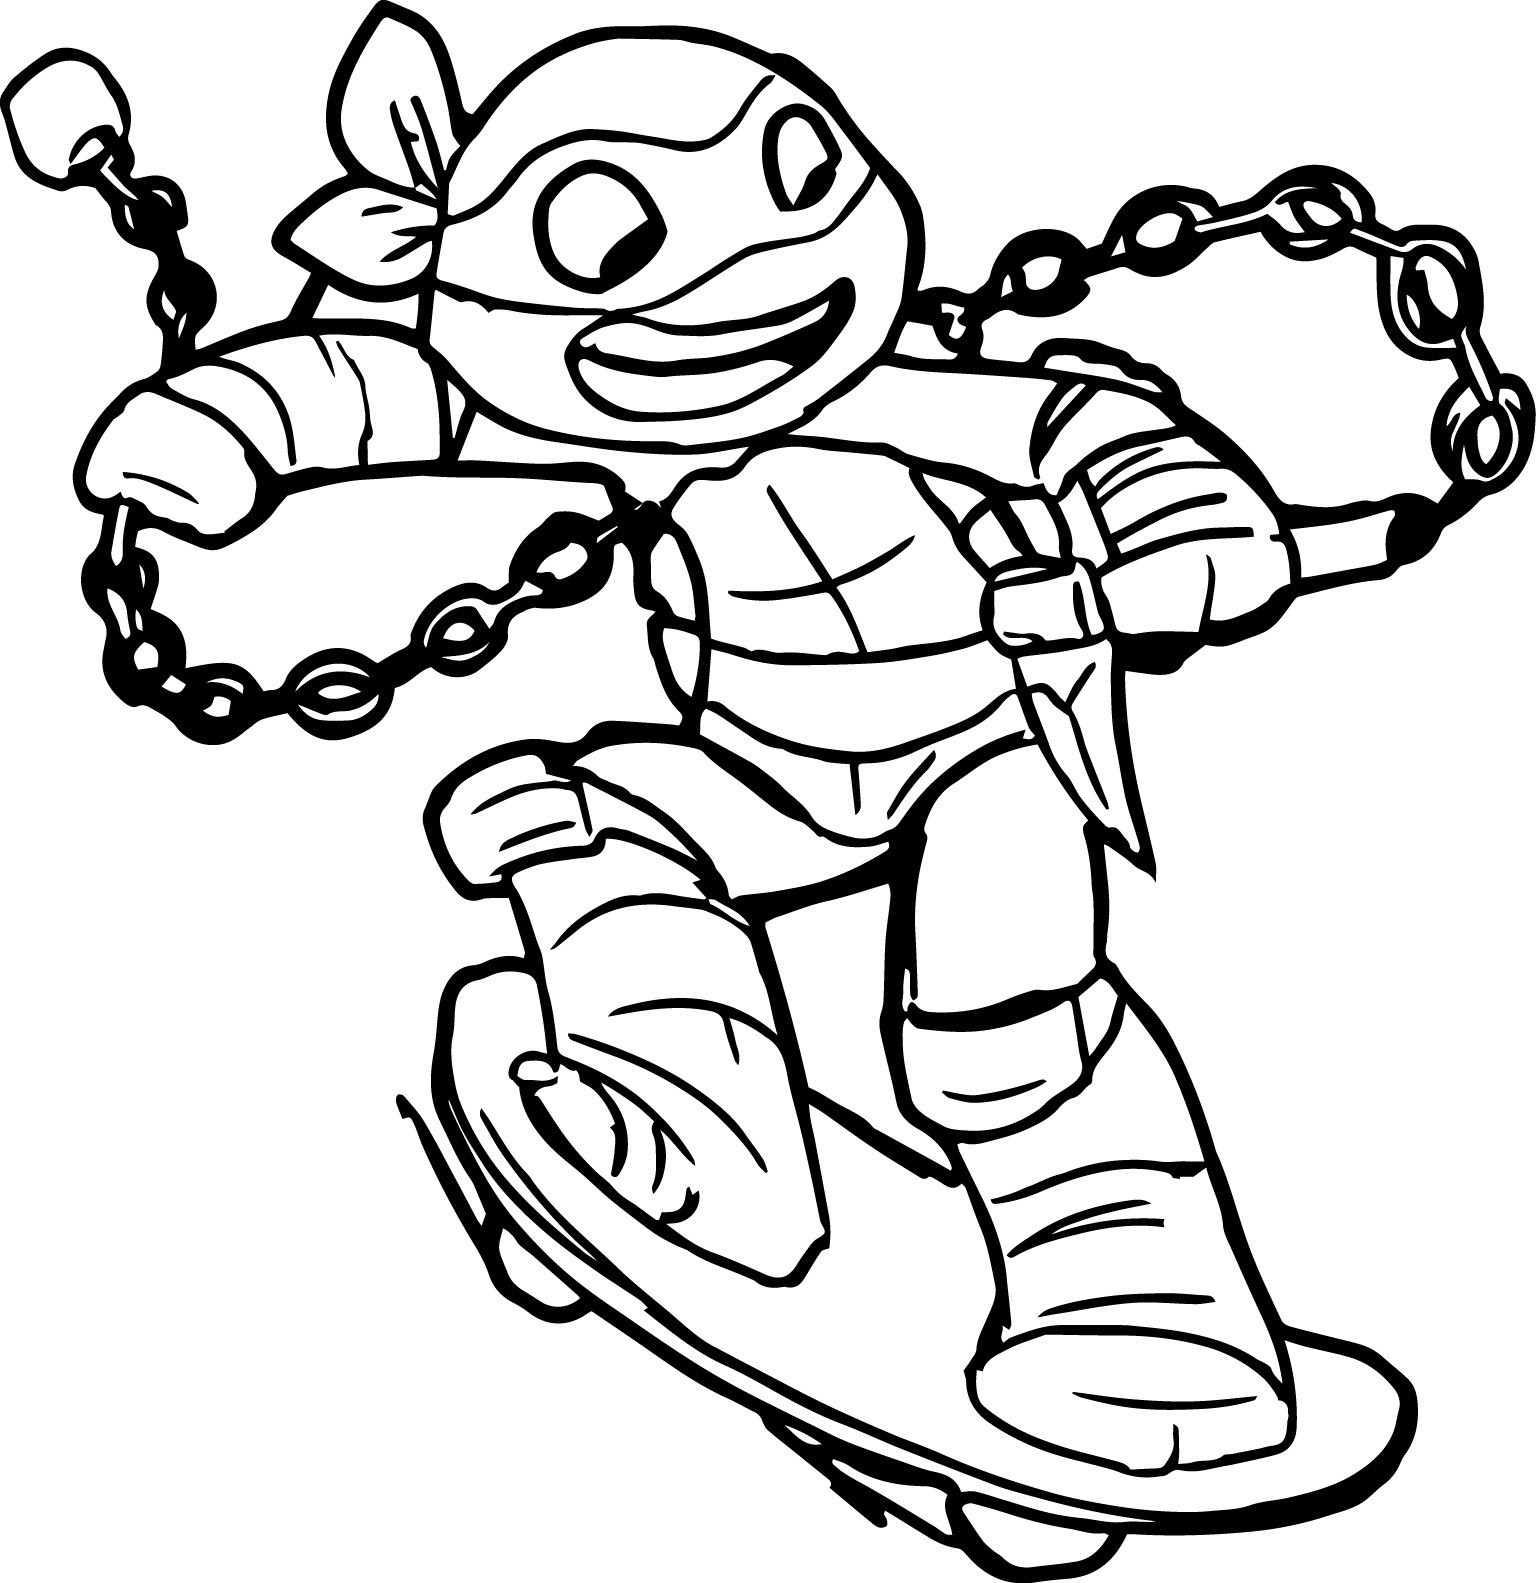 Ninja Turtle Mask Coloring Page Teenage Mutant Ninja Turtles Coloring Pages Best Coloring Pages